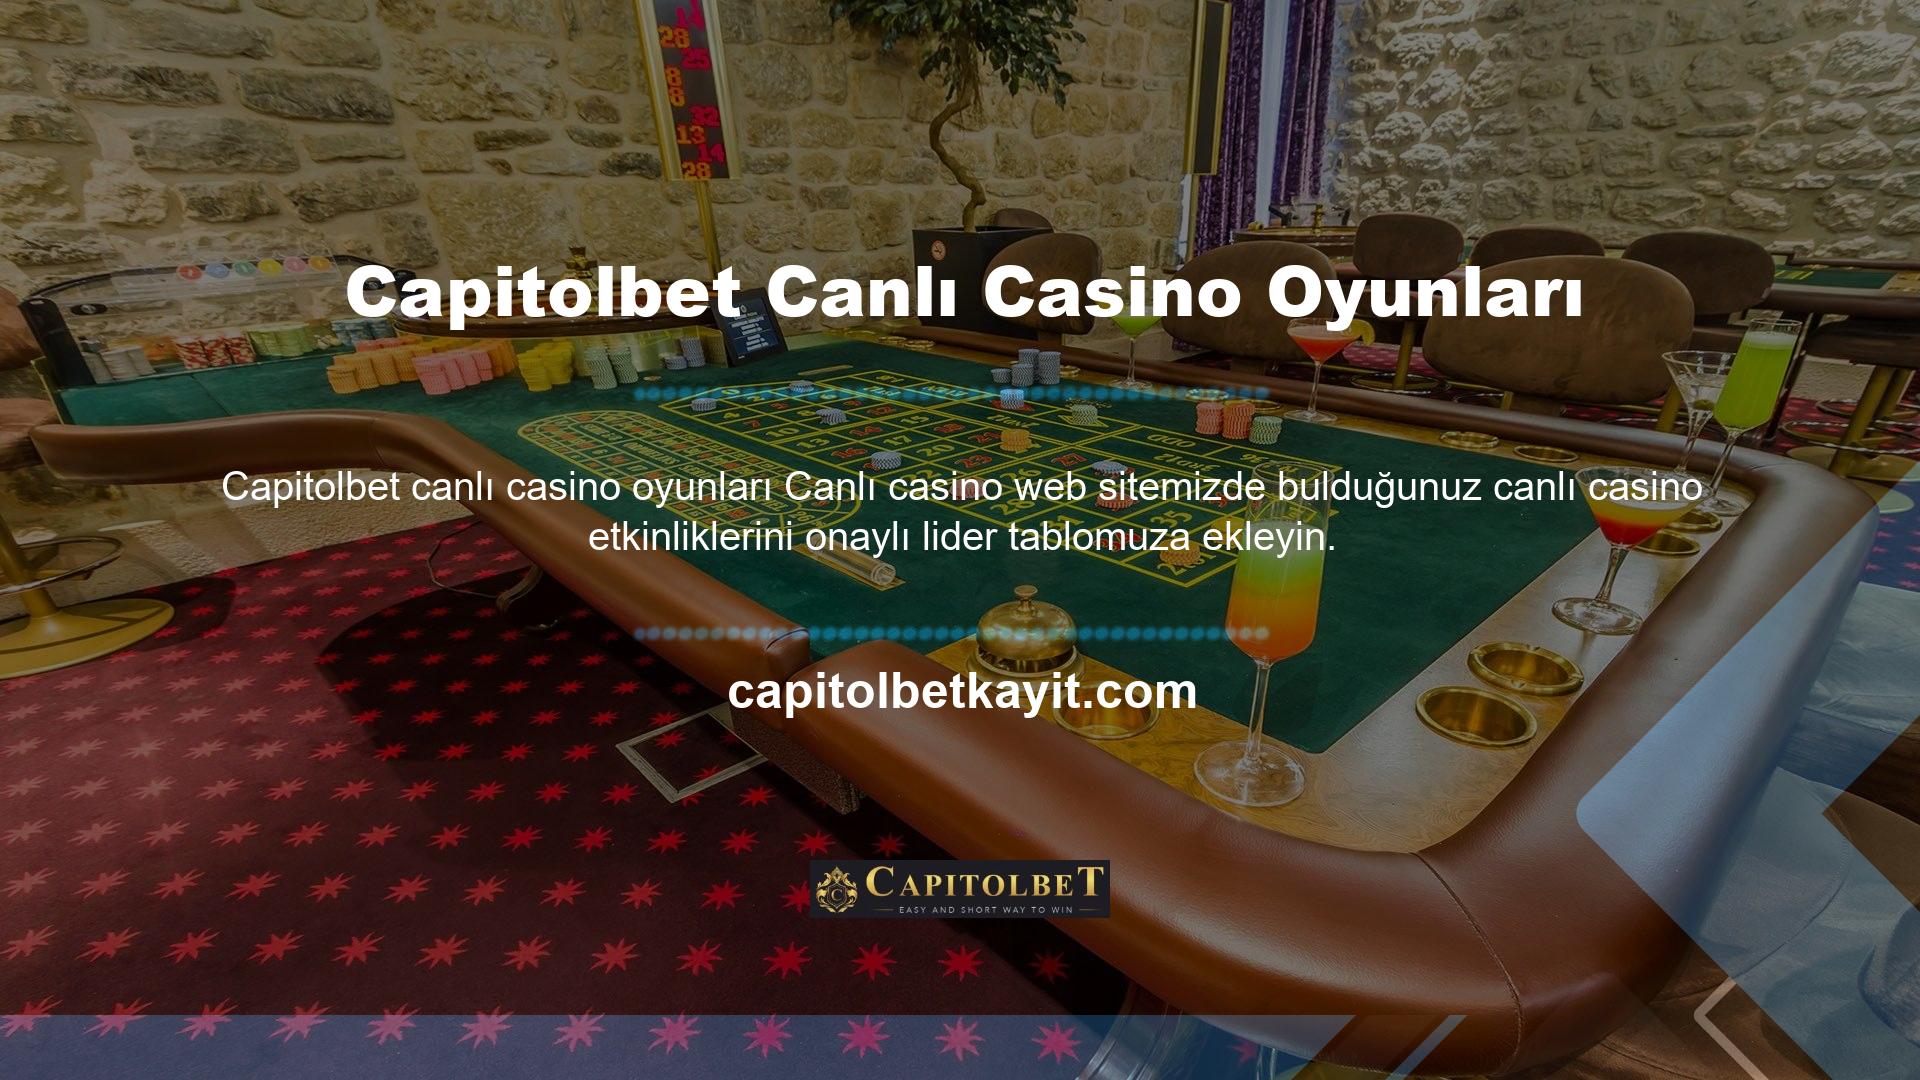 Canlı casinolarda 4 oyun vardır: poker, rulet, blackjack ve bakara